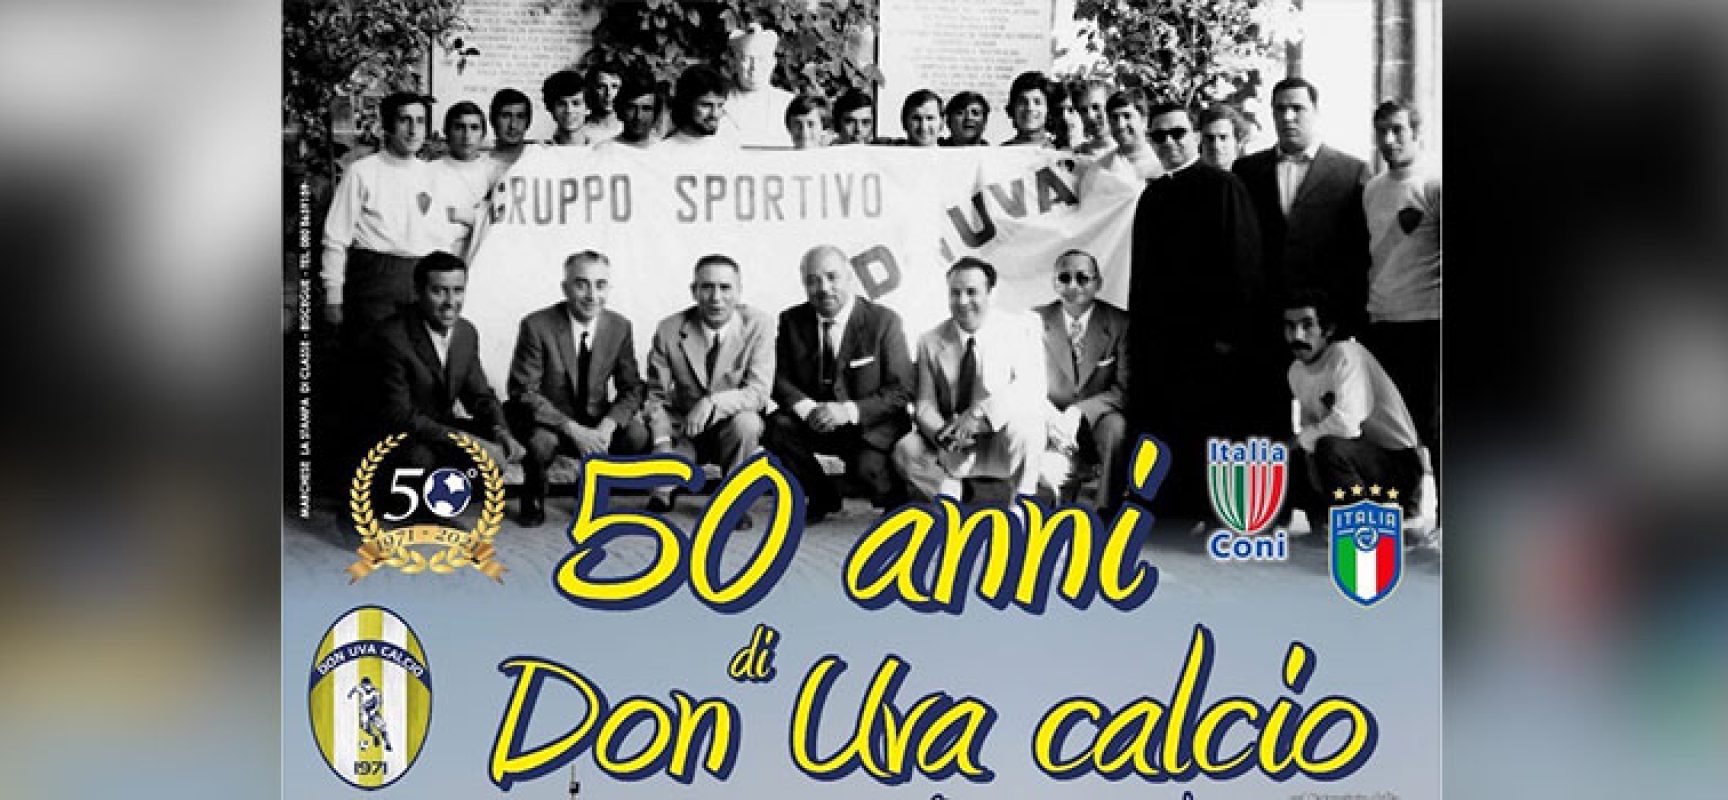 Il Don Uva Calcio compie 50 anni, oggi giornata di eventi celebrativi / PROGRAMMA